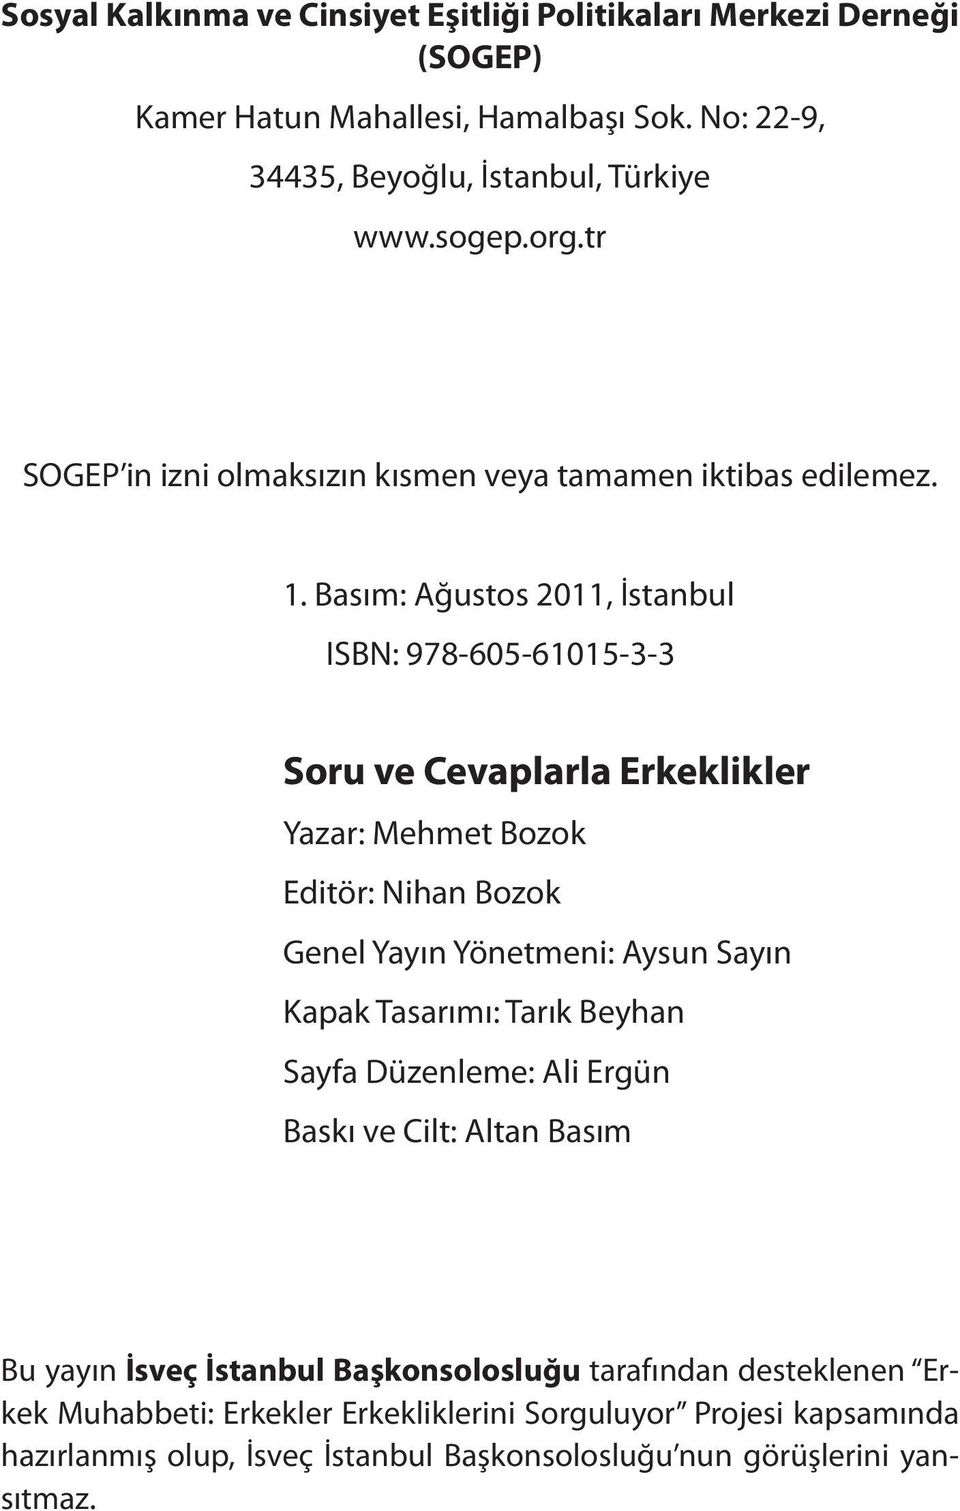 Basım: Ağustos 2011, İstanbul ISBN: 978-605-61015-3-3 Soru ve Cevaplarla Erkeklikler Yazar: Mehmet Bozok Editör: Nihan Bozok Genel Yayın Yönetmeni: Aysun Sayın Kapak